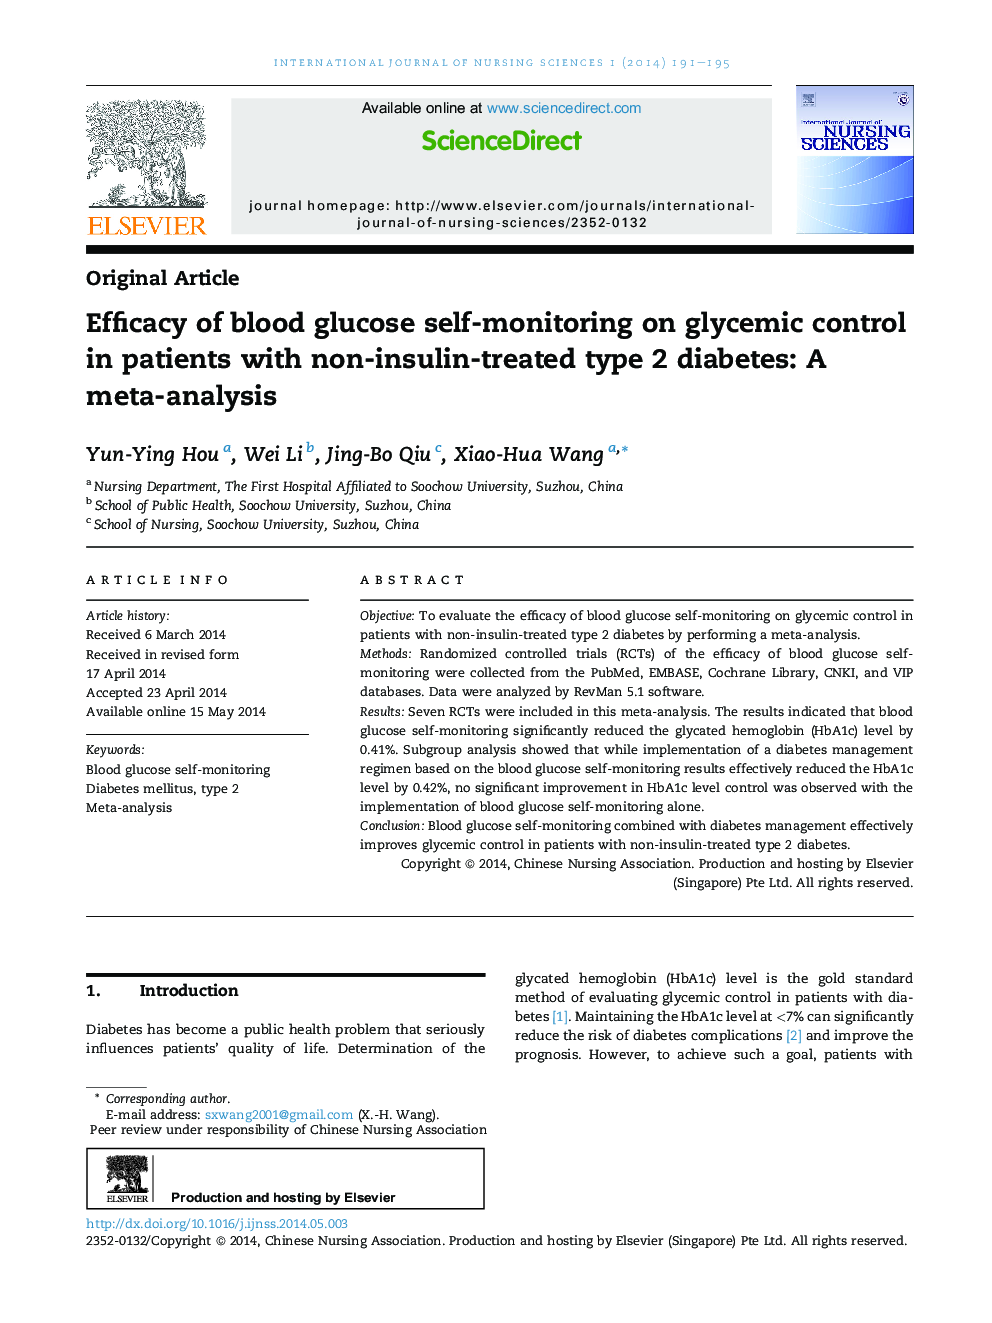 بررسی اثربخشی خودمراقبتی قند خون بر کنترل گلیسمی در بیماران مبتلا به دیابت نوع 2 غیر انسولین: یک متاآنالیز